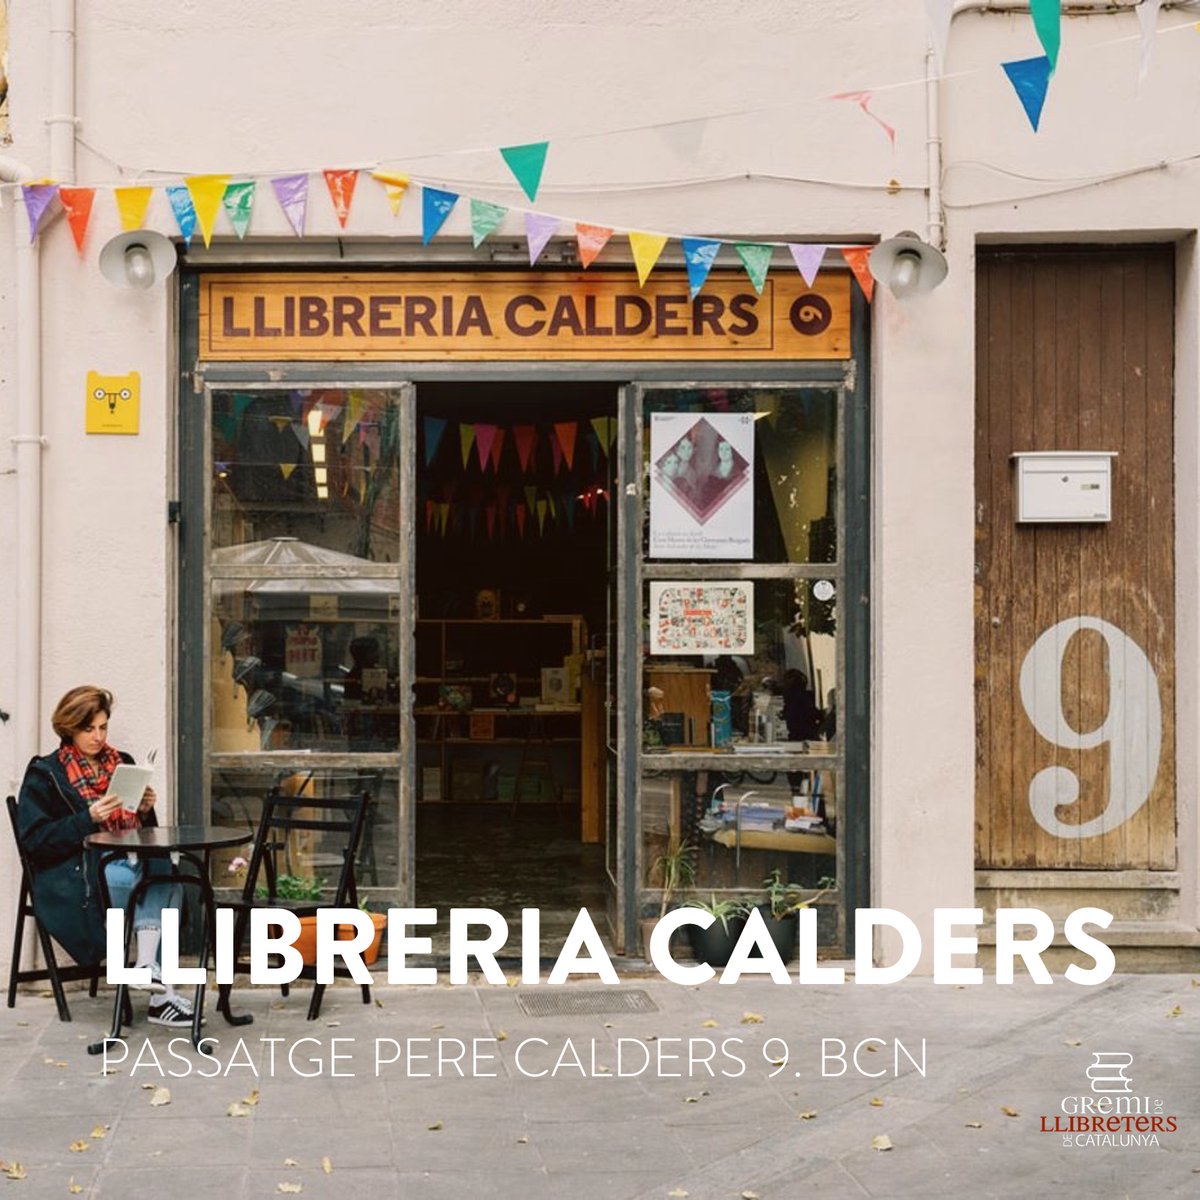 Des del Gremi de Llibreters de Catalunya volem felicitar de tot cor a la Llibreria @LaCalders de #Barcelona que avui celebra el seu 🔟è aniversari! Per molts anys i molts llibres! ❤📚 #Catalunya #llibreries